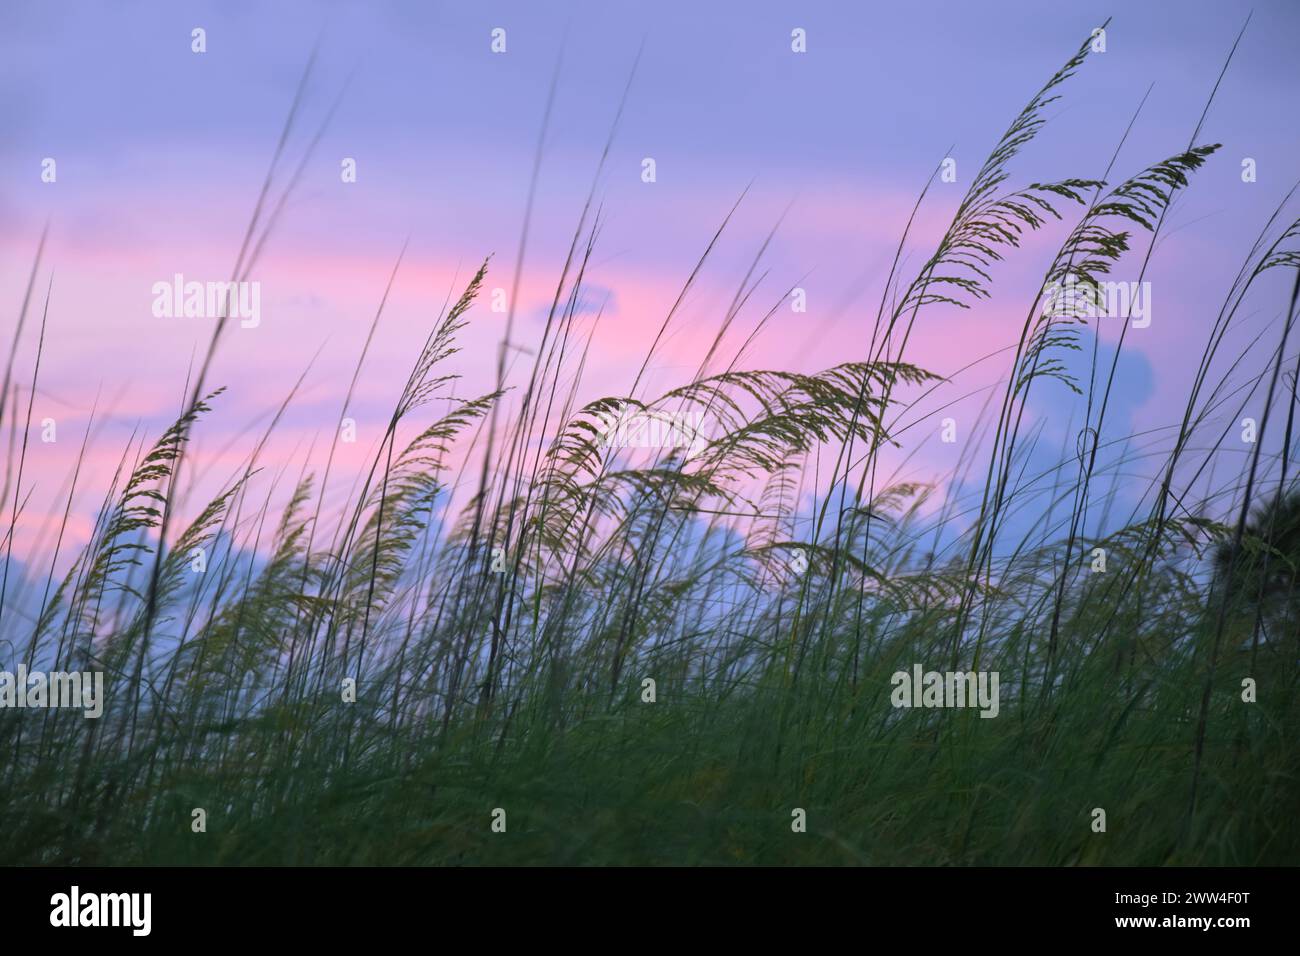 Dünen- oder Strandgras (Uniola paniculata), die während der blauen Stunde, nach Sonnenuntergang mit bläulich-violettem Himmel, im Wind bewegt werden. Stockfoto